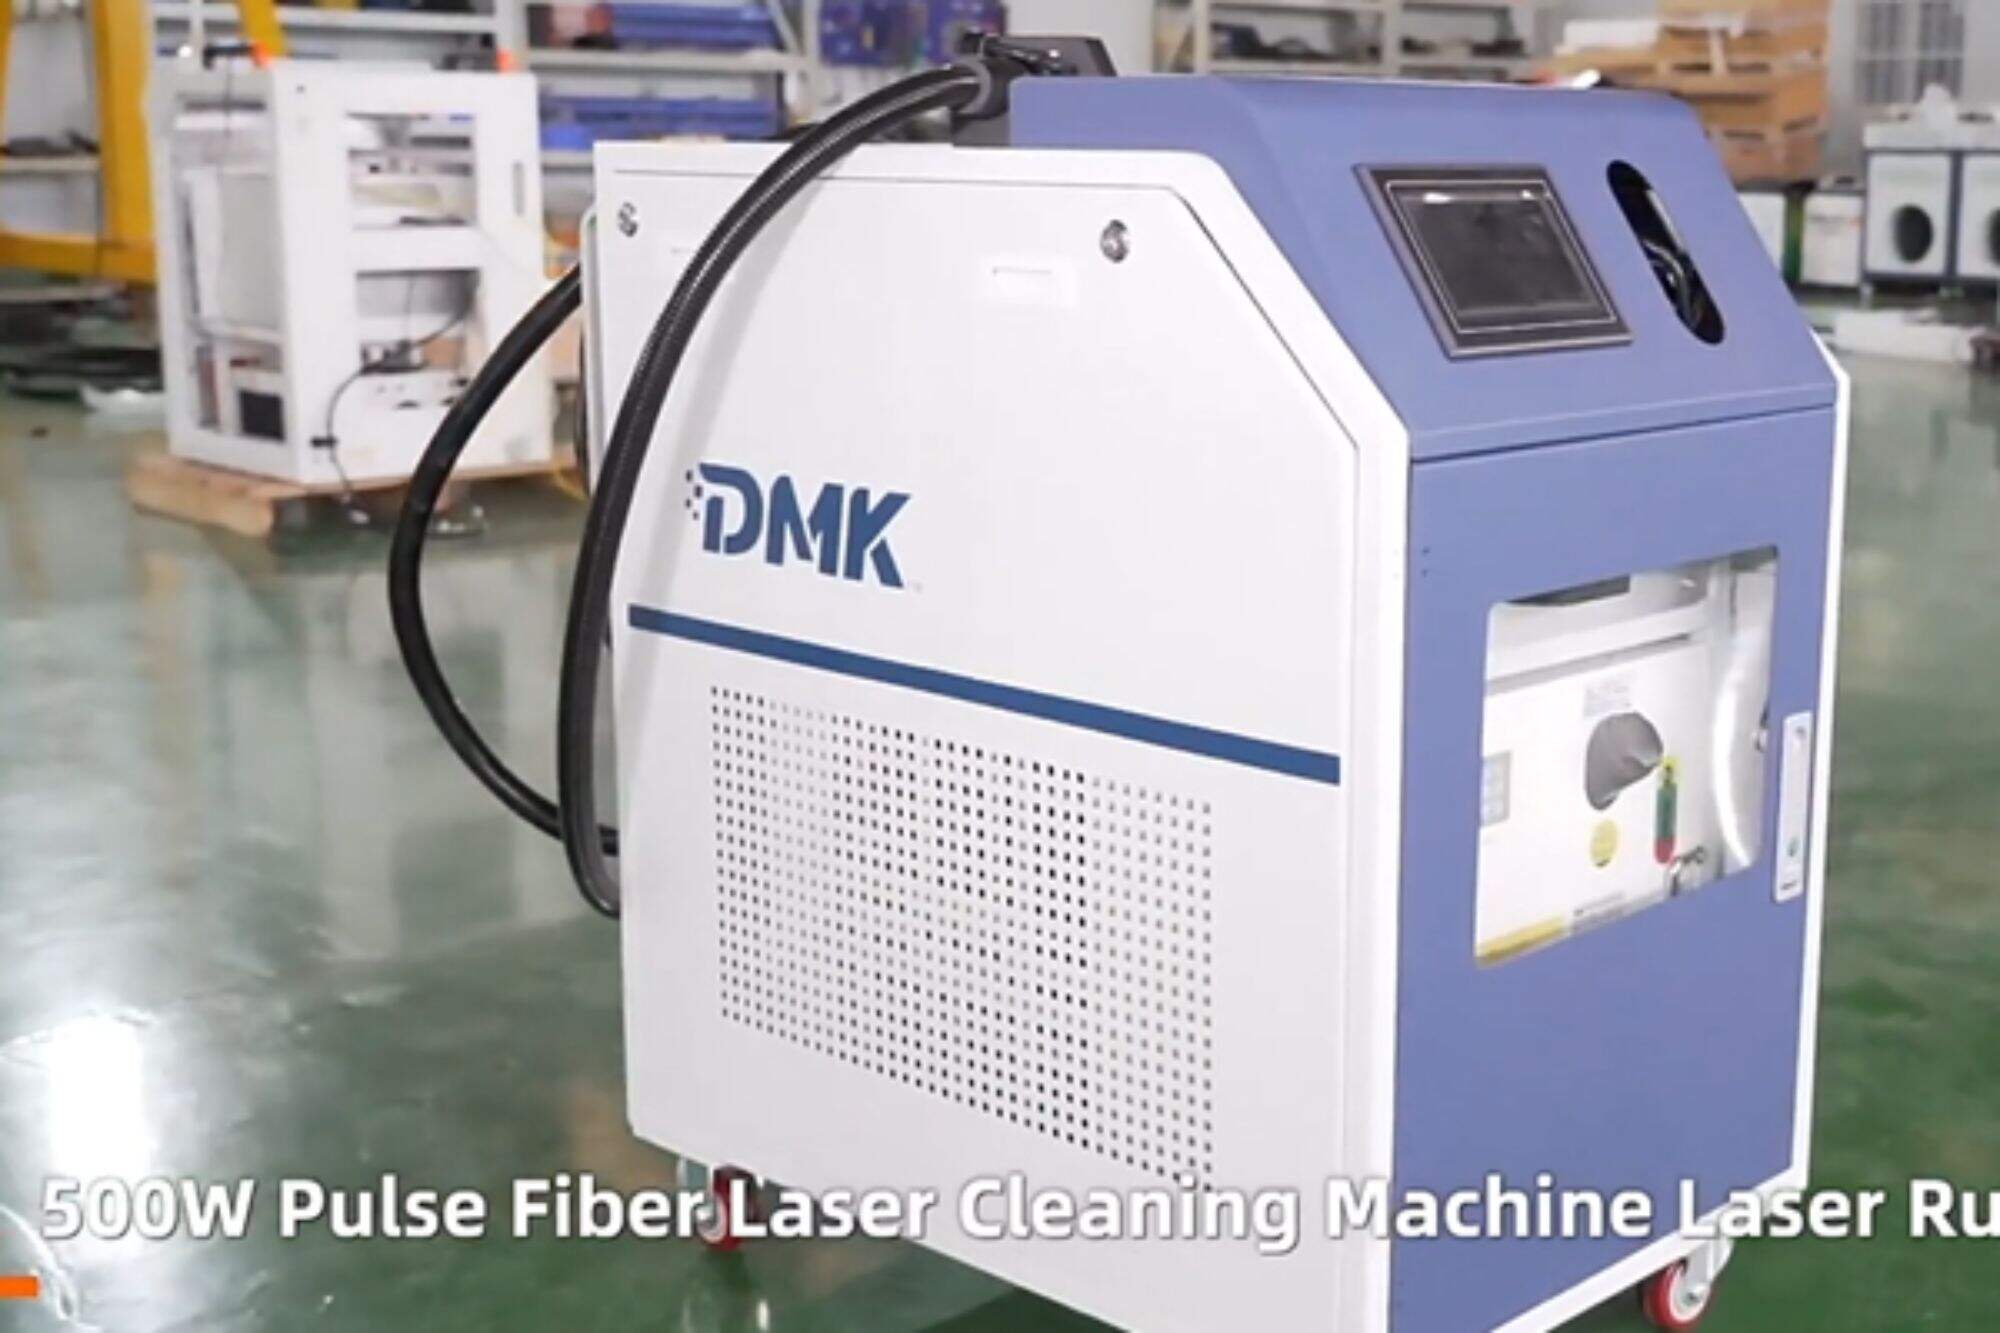 Machine de nettoyage laser à impulsion DMK 500w